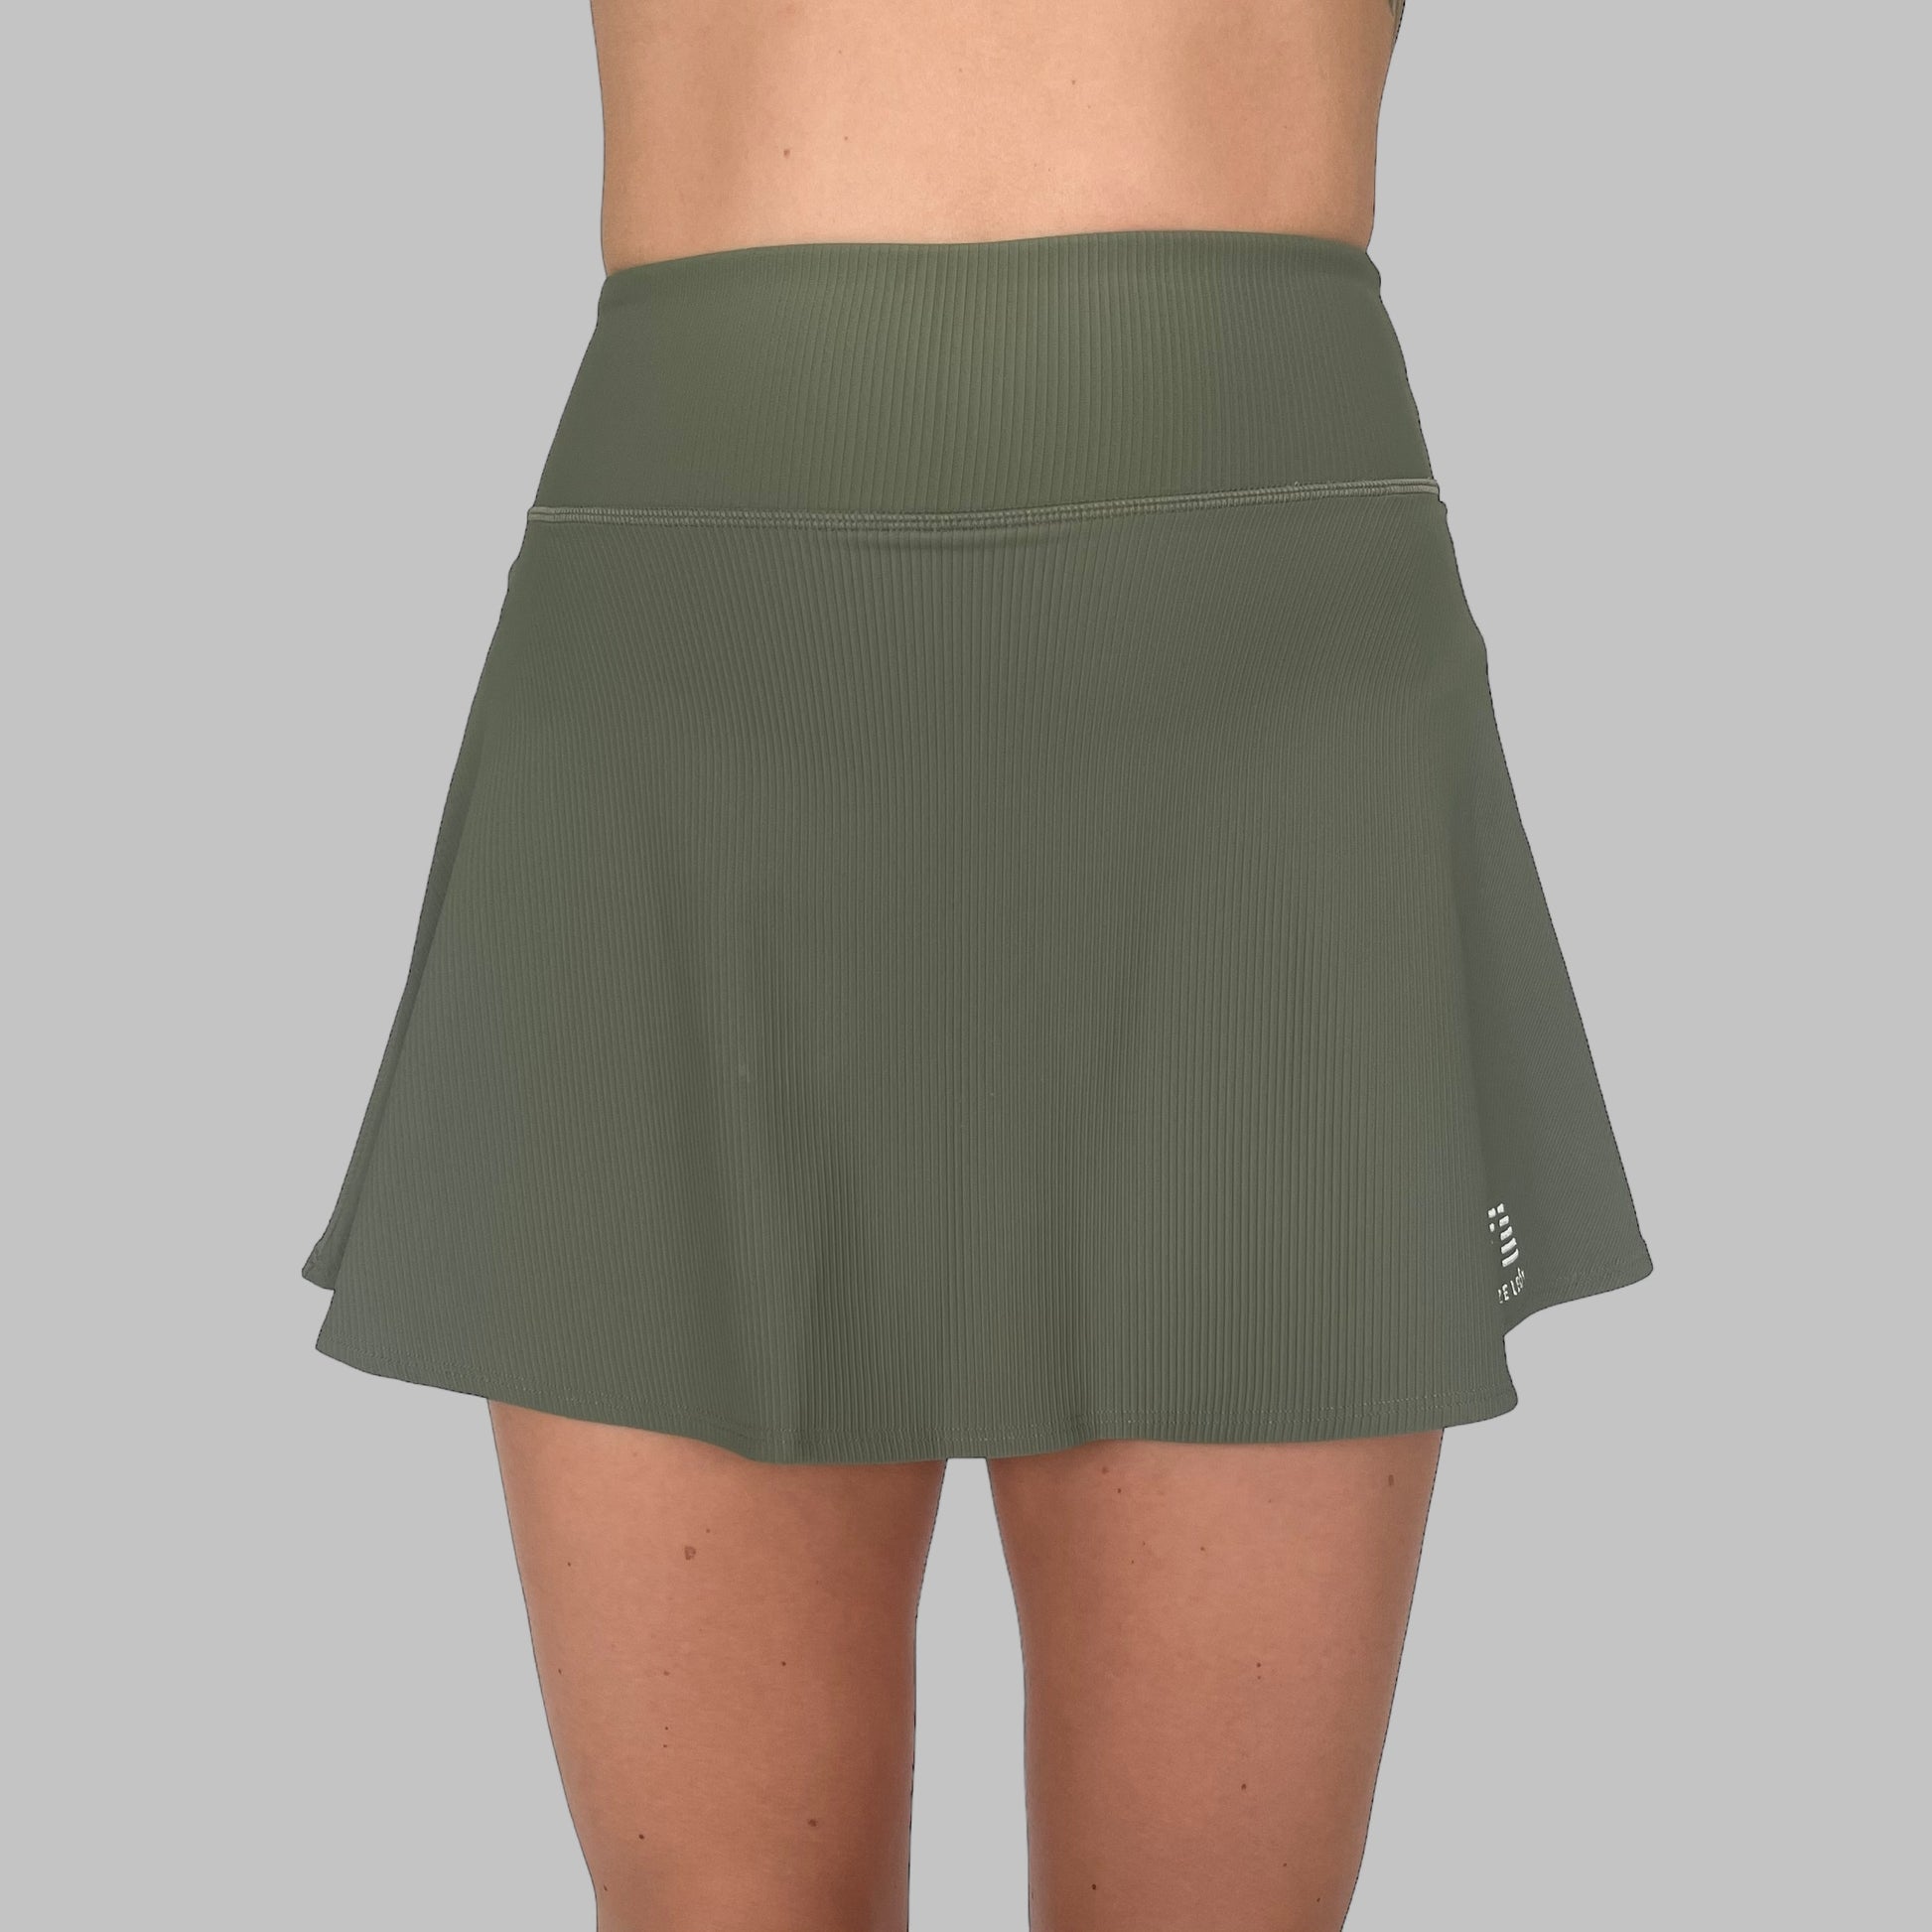 Frontvy av Maya Ribbed Skirt i army green, framhäver kjolens höga midja och moderna ribbade design, mot en enfärgad bakgrund.